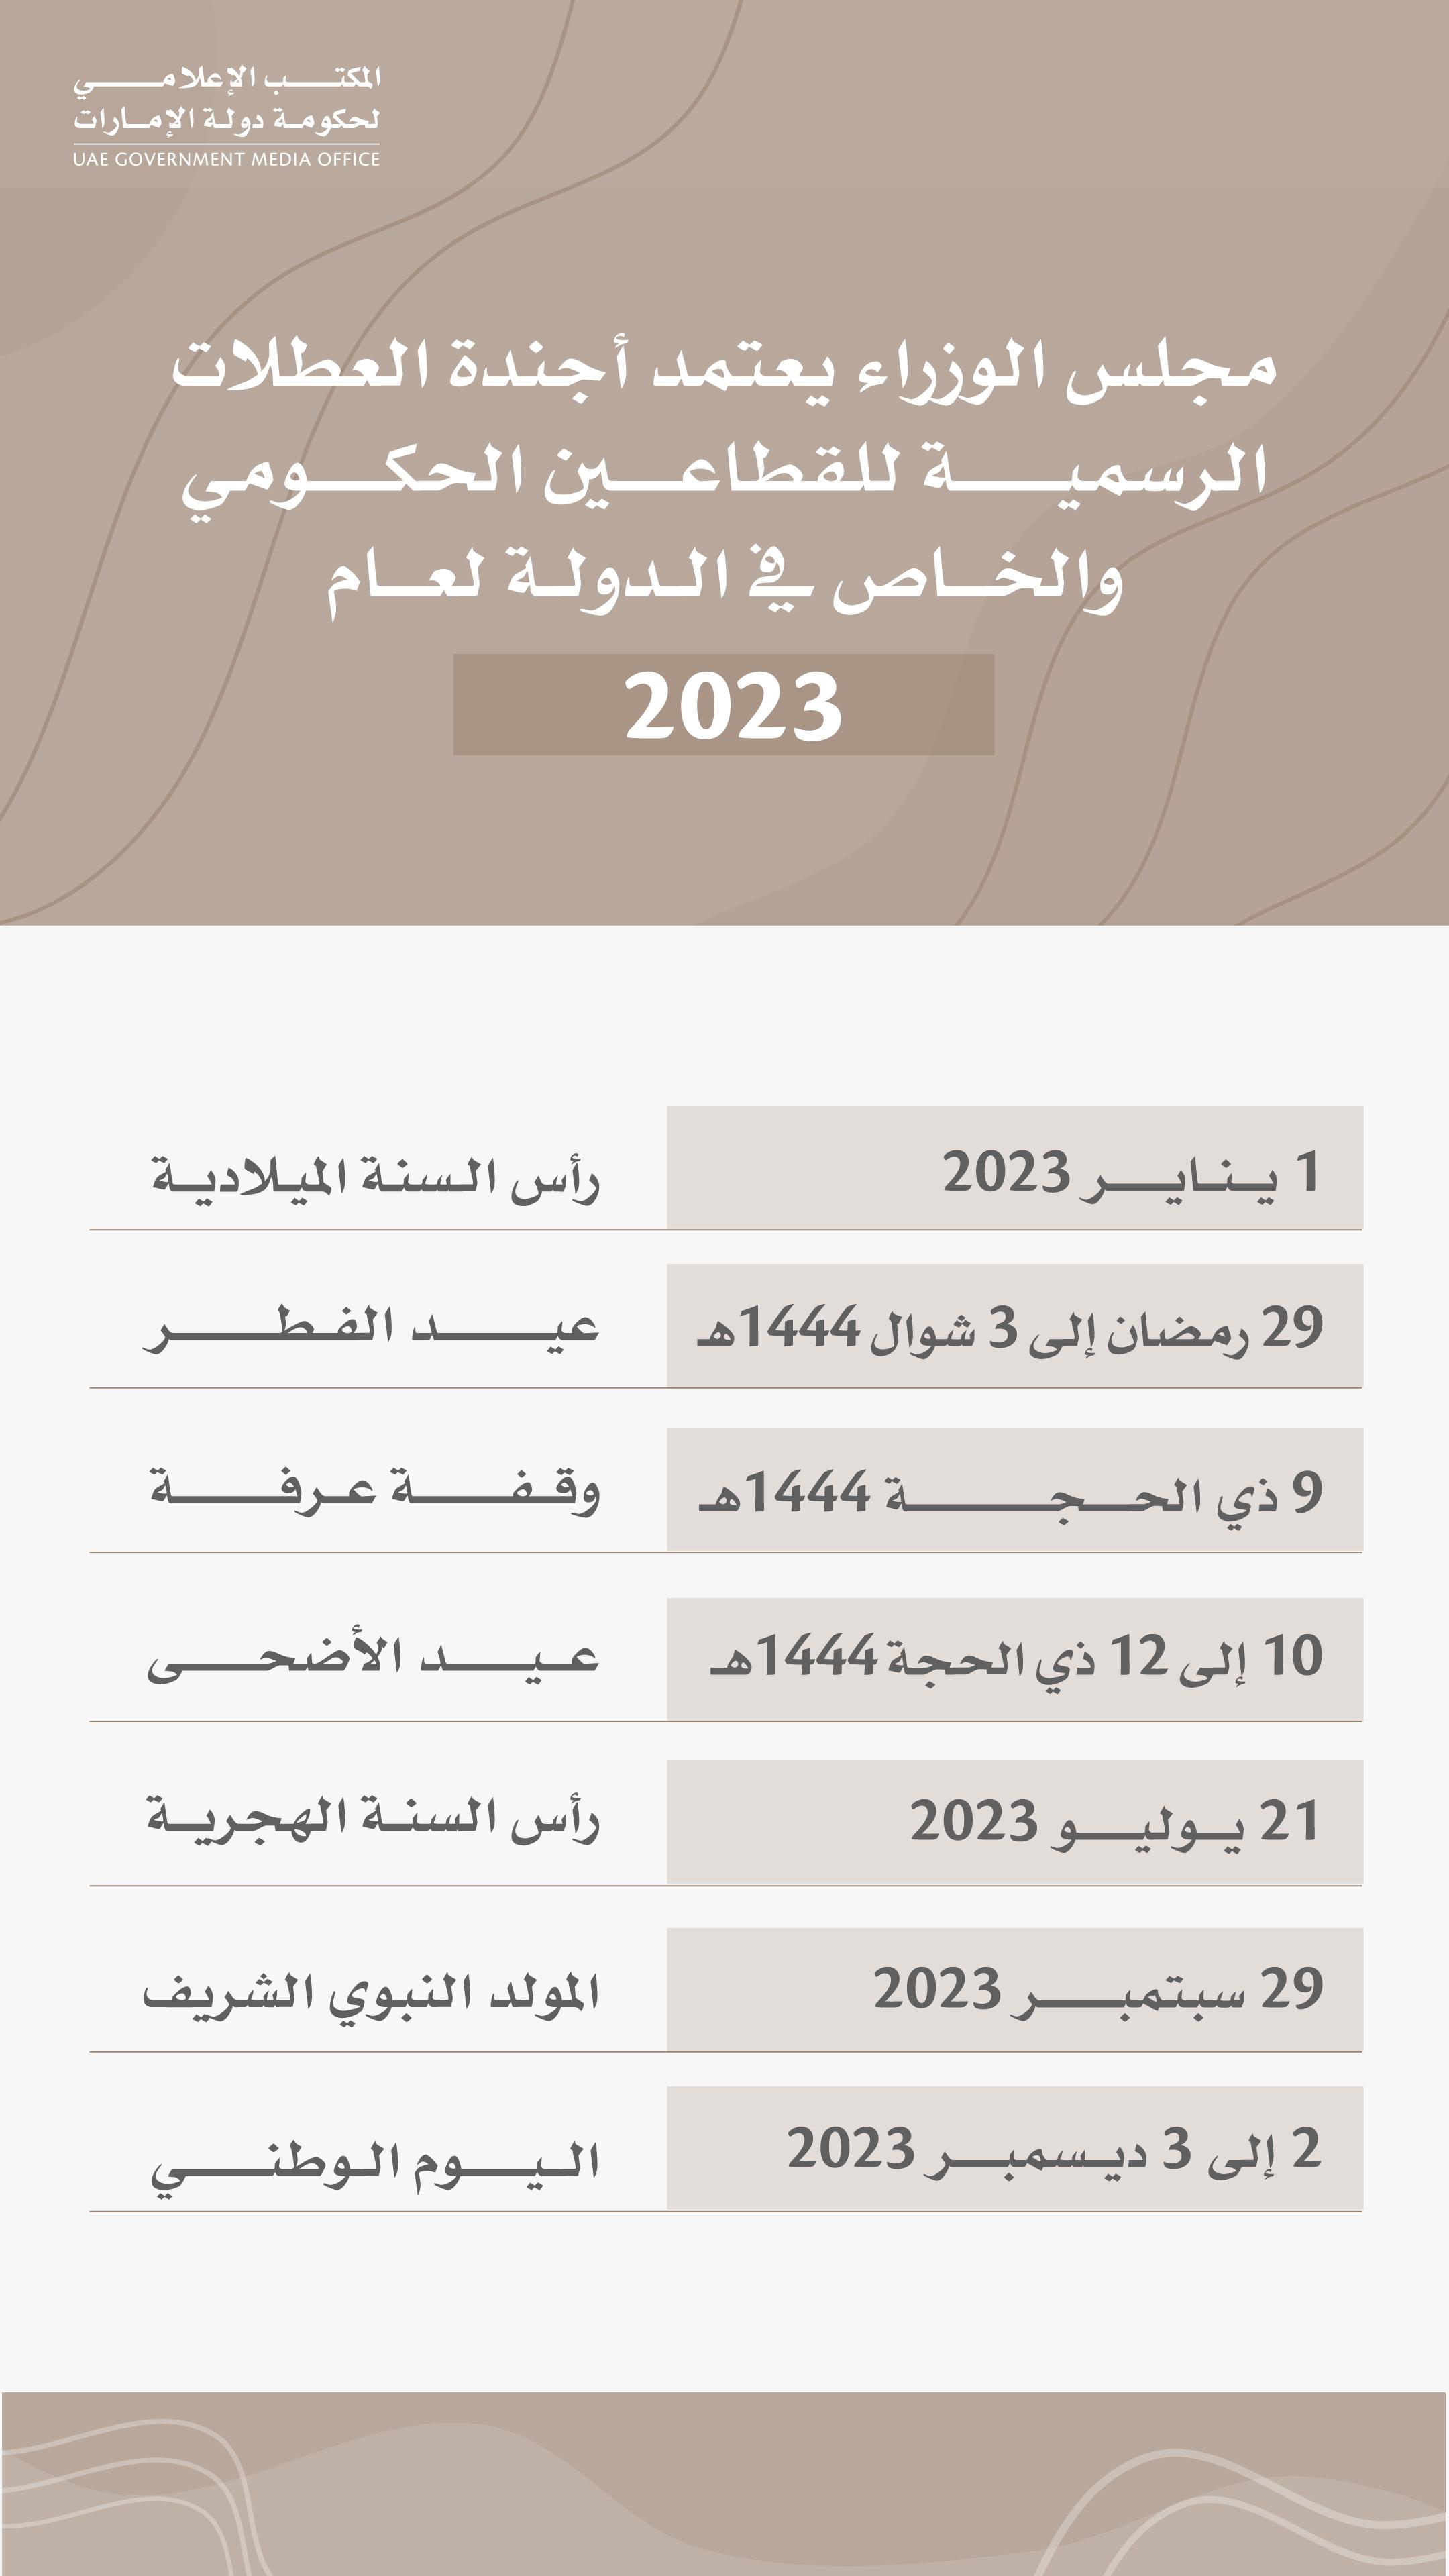 اجازة عيد الاضحى الامارات للقطاعيين الخاص والحكومي من 28 يوليو حتى 30 يوليو 2023